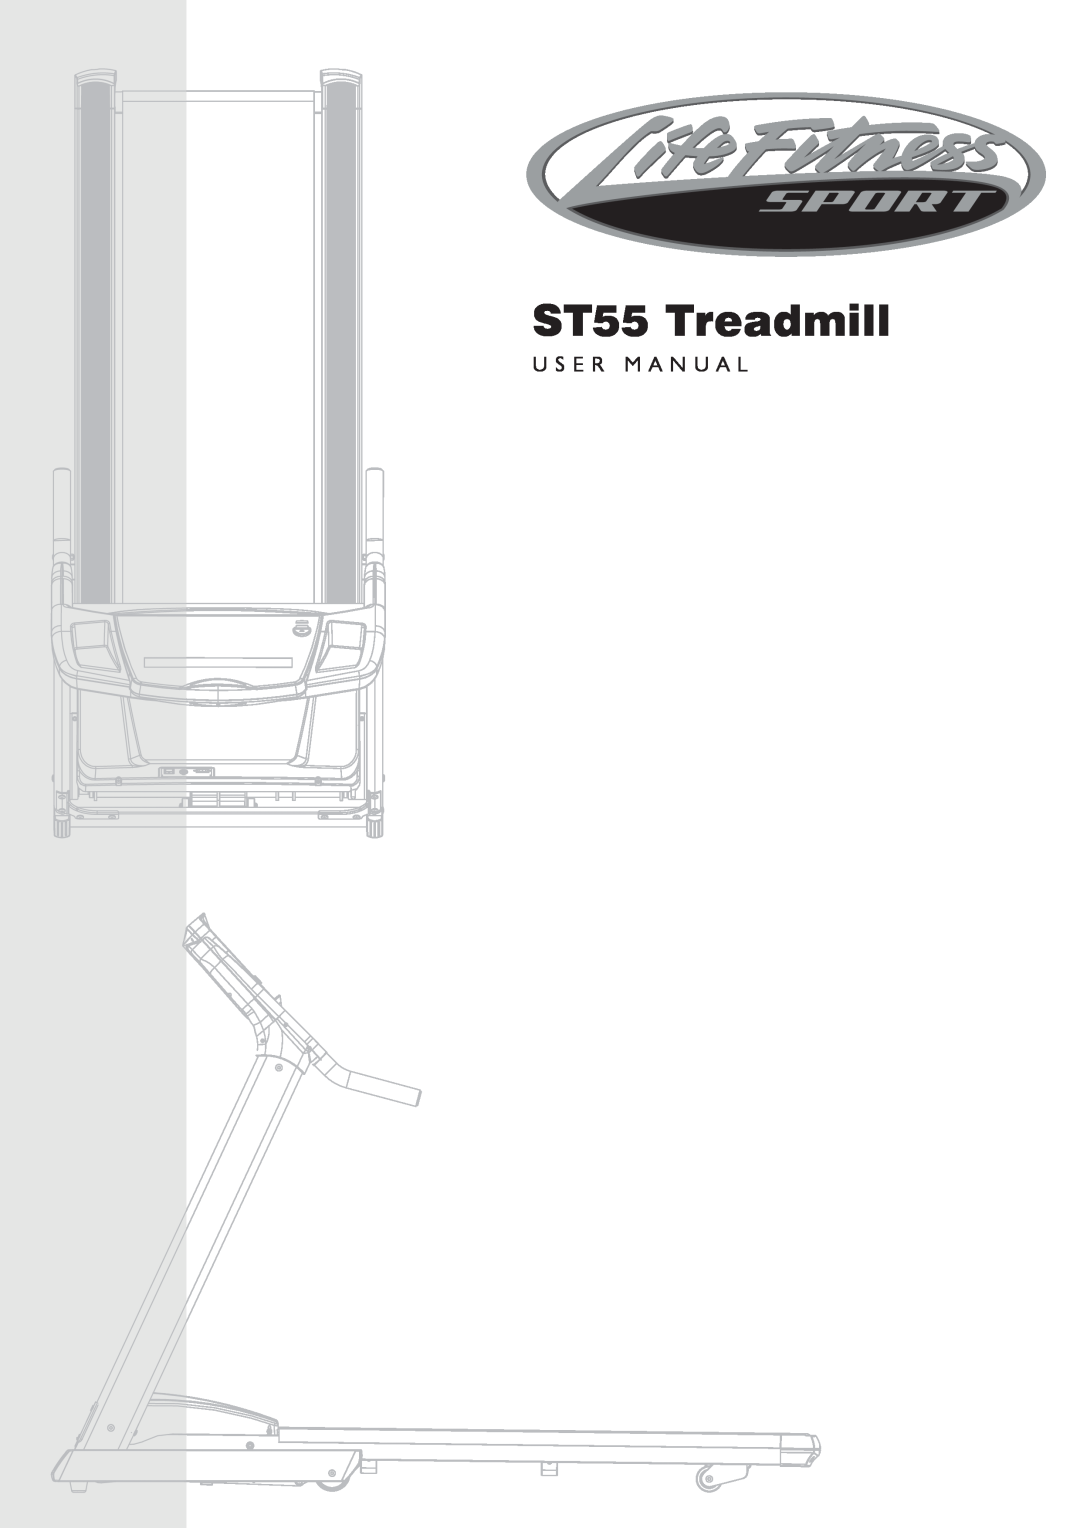 Life Fitness ST35 user manual ST55 Treadmill, U S E R M A N U A L 